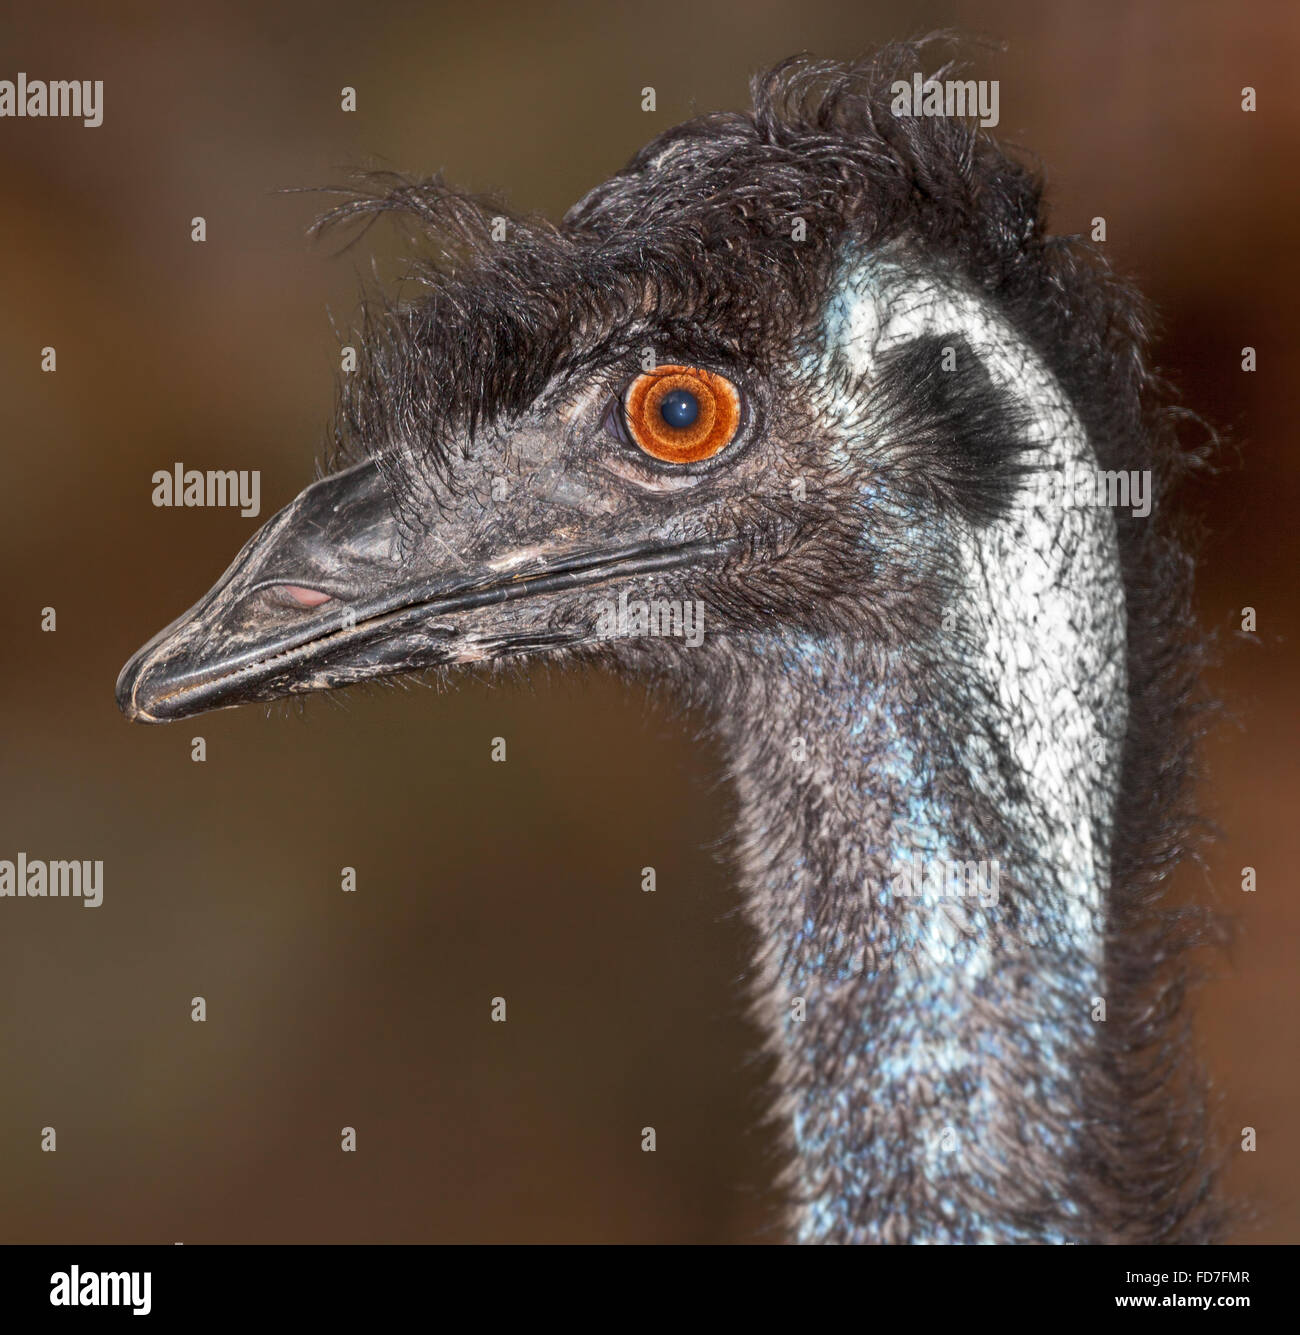 an Australian native, emu, a large flightless bird. Stock Photo